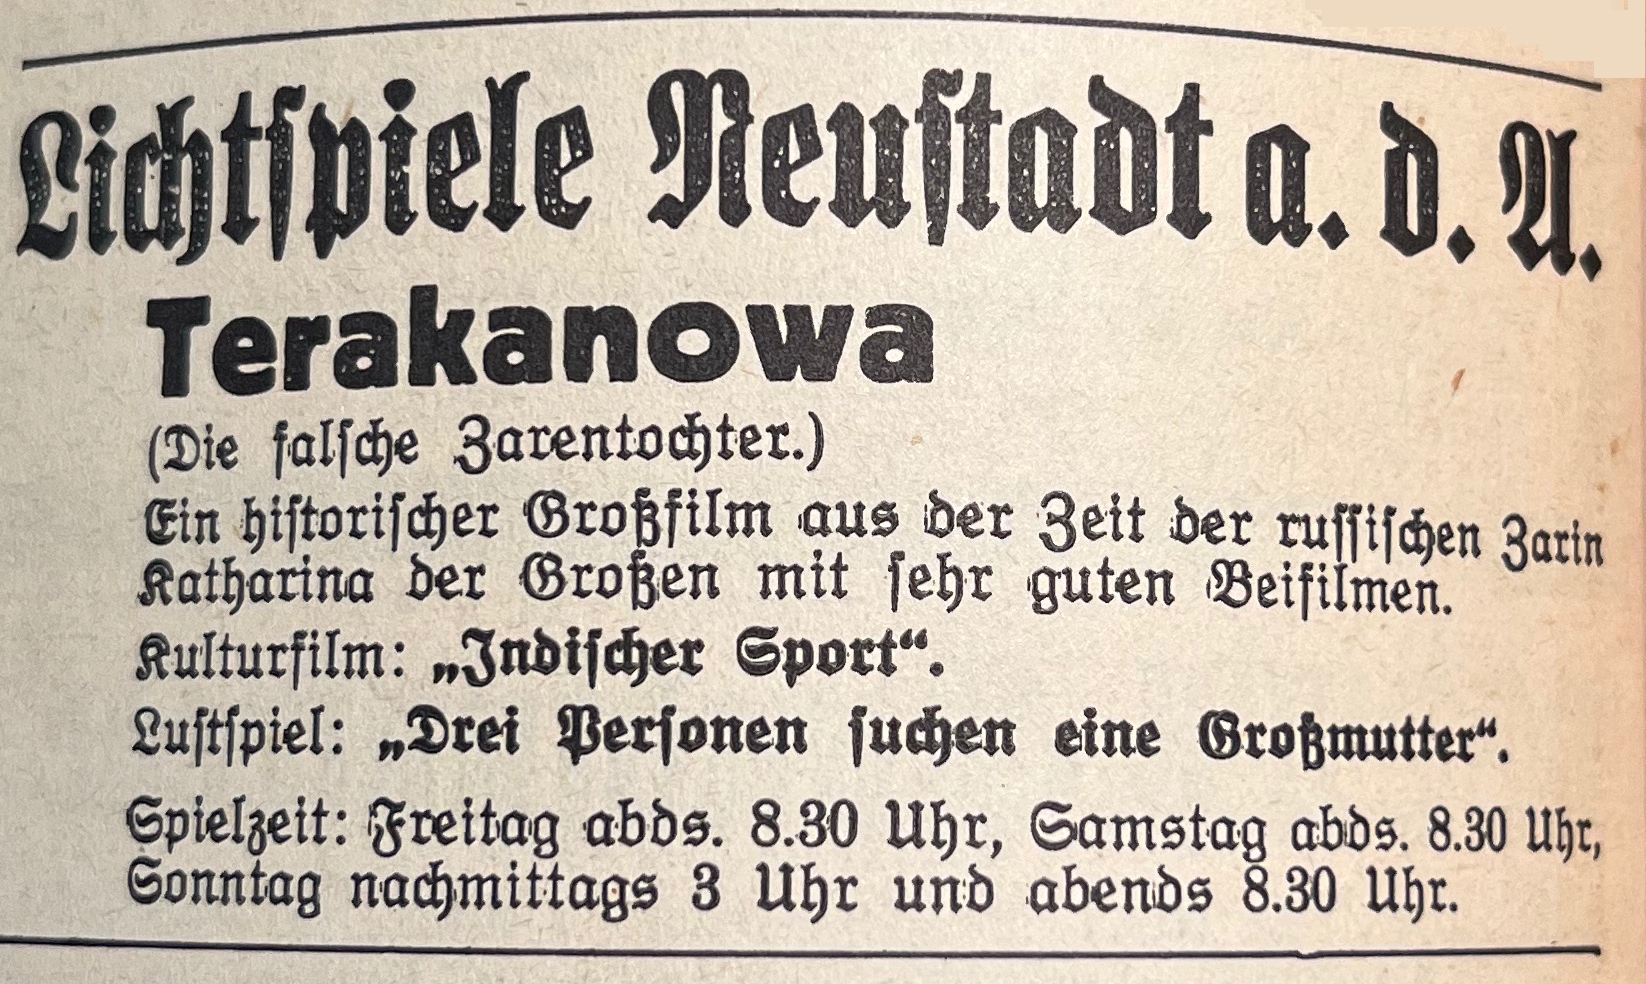 Lichtspiele Neustadt an der Aisch Terakanovwa (Die falsche Zarentochter), 29.7.1932